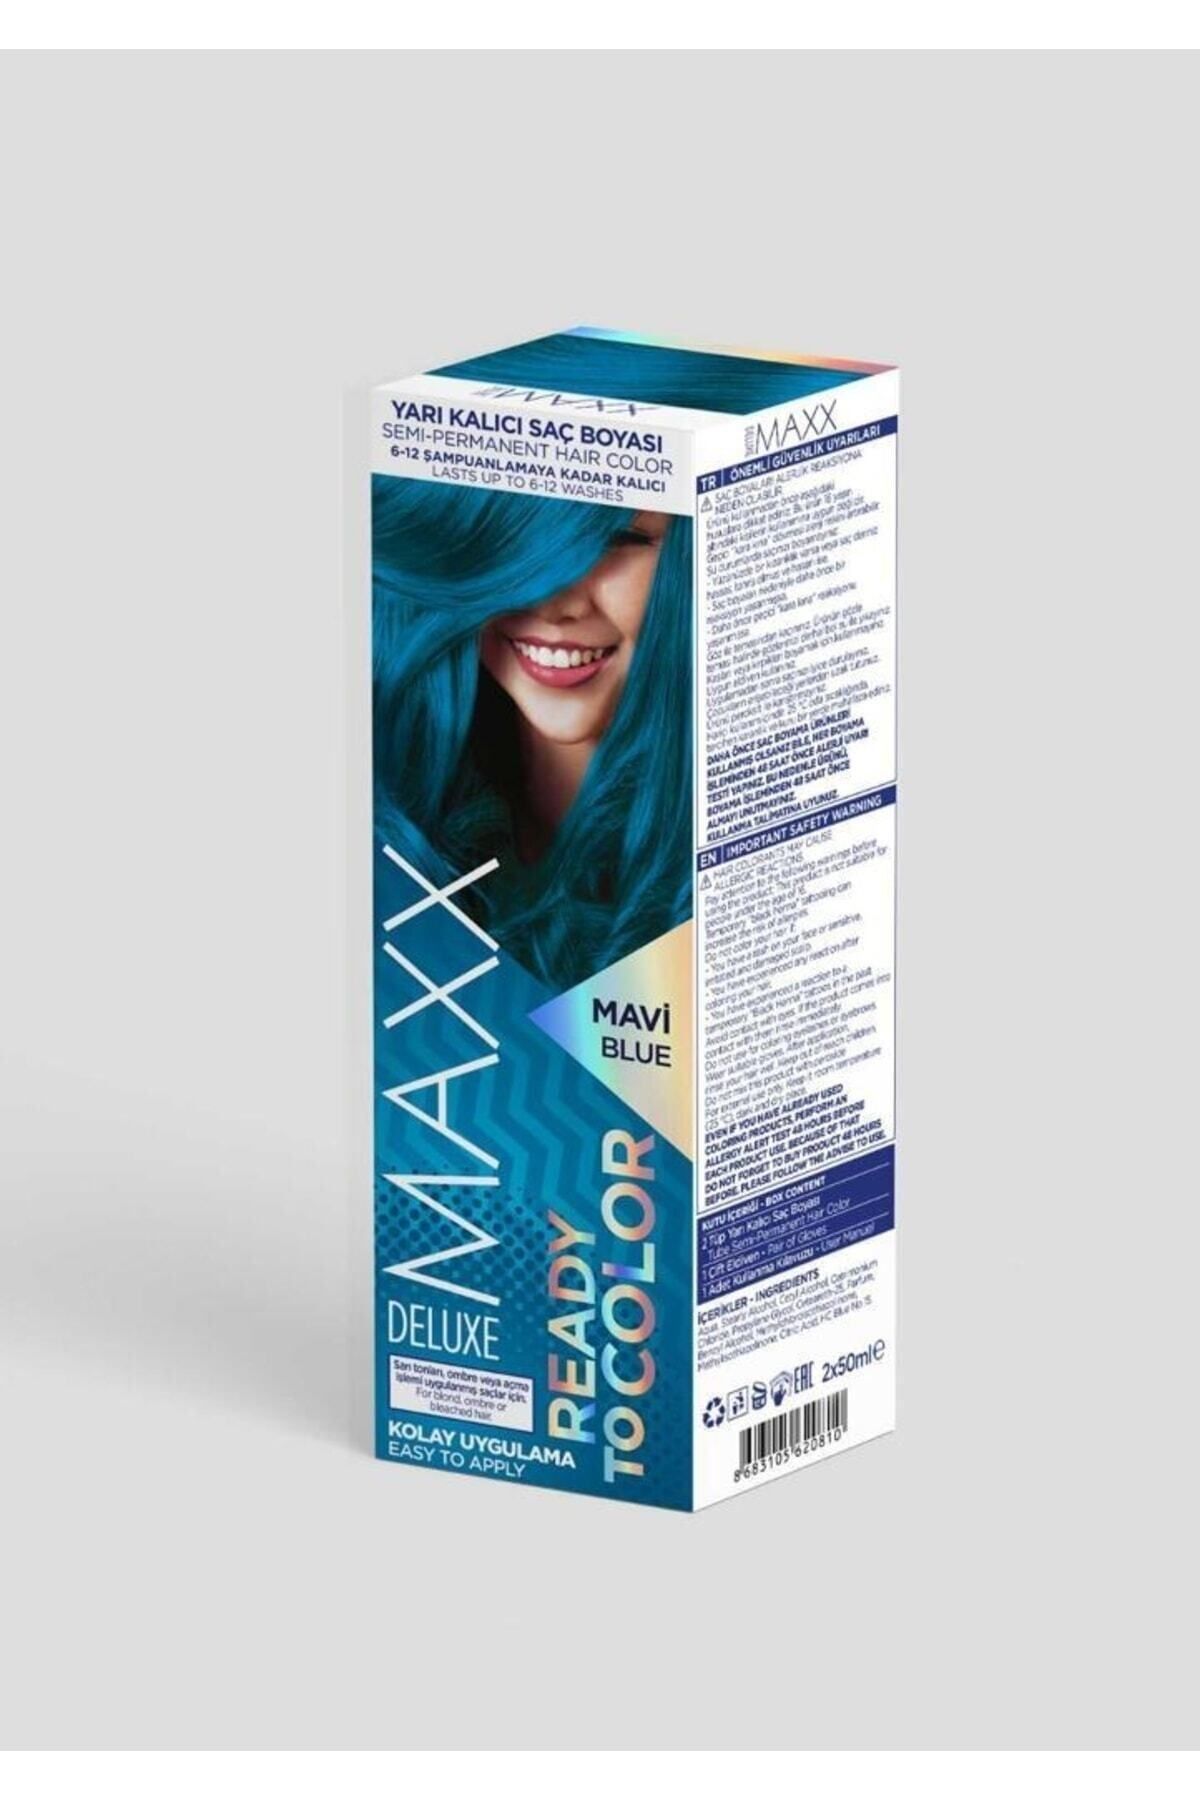 MAXX DELUXE Ready To Color Yarı Kalıcı Saç Boyası - Mavi